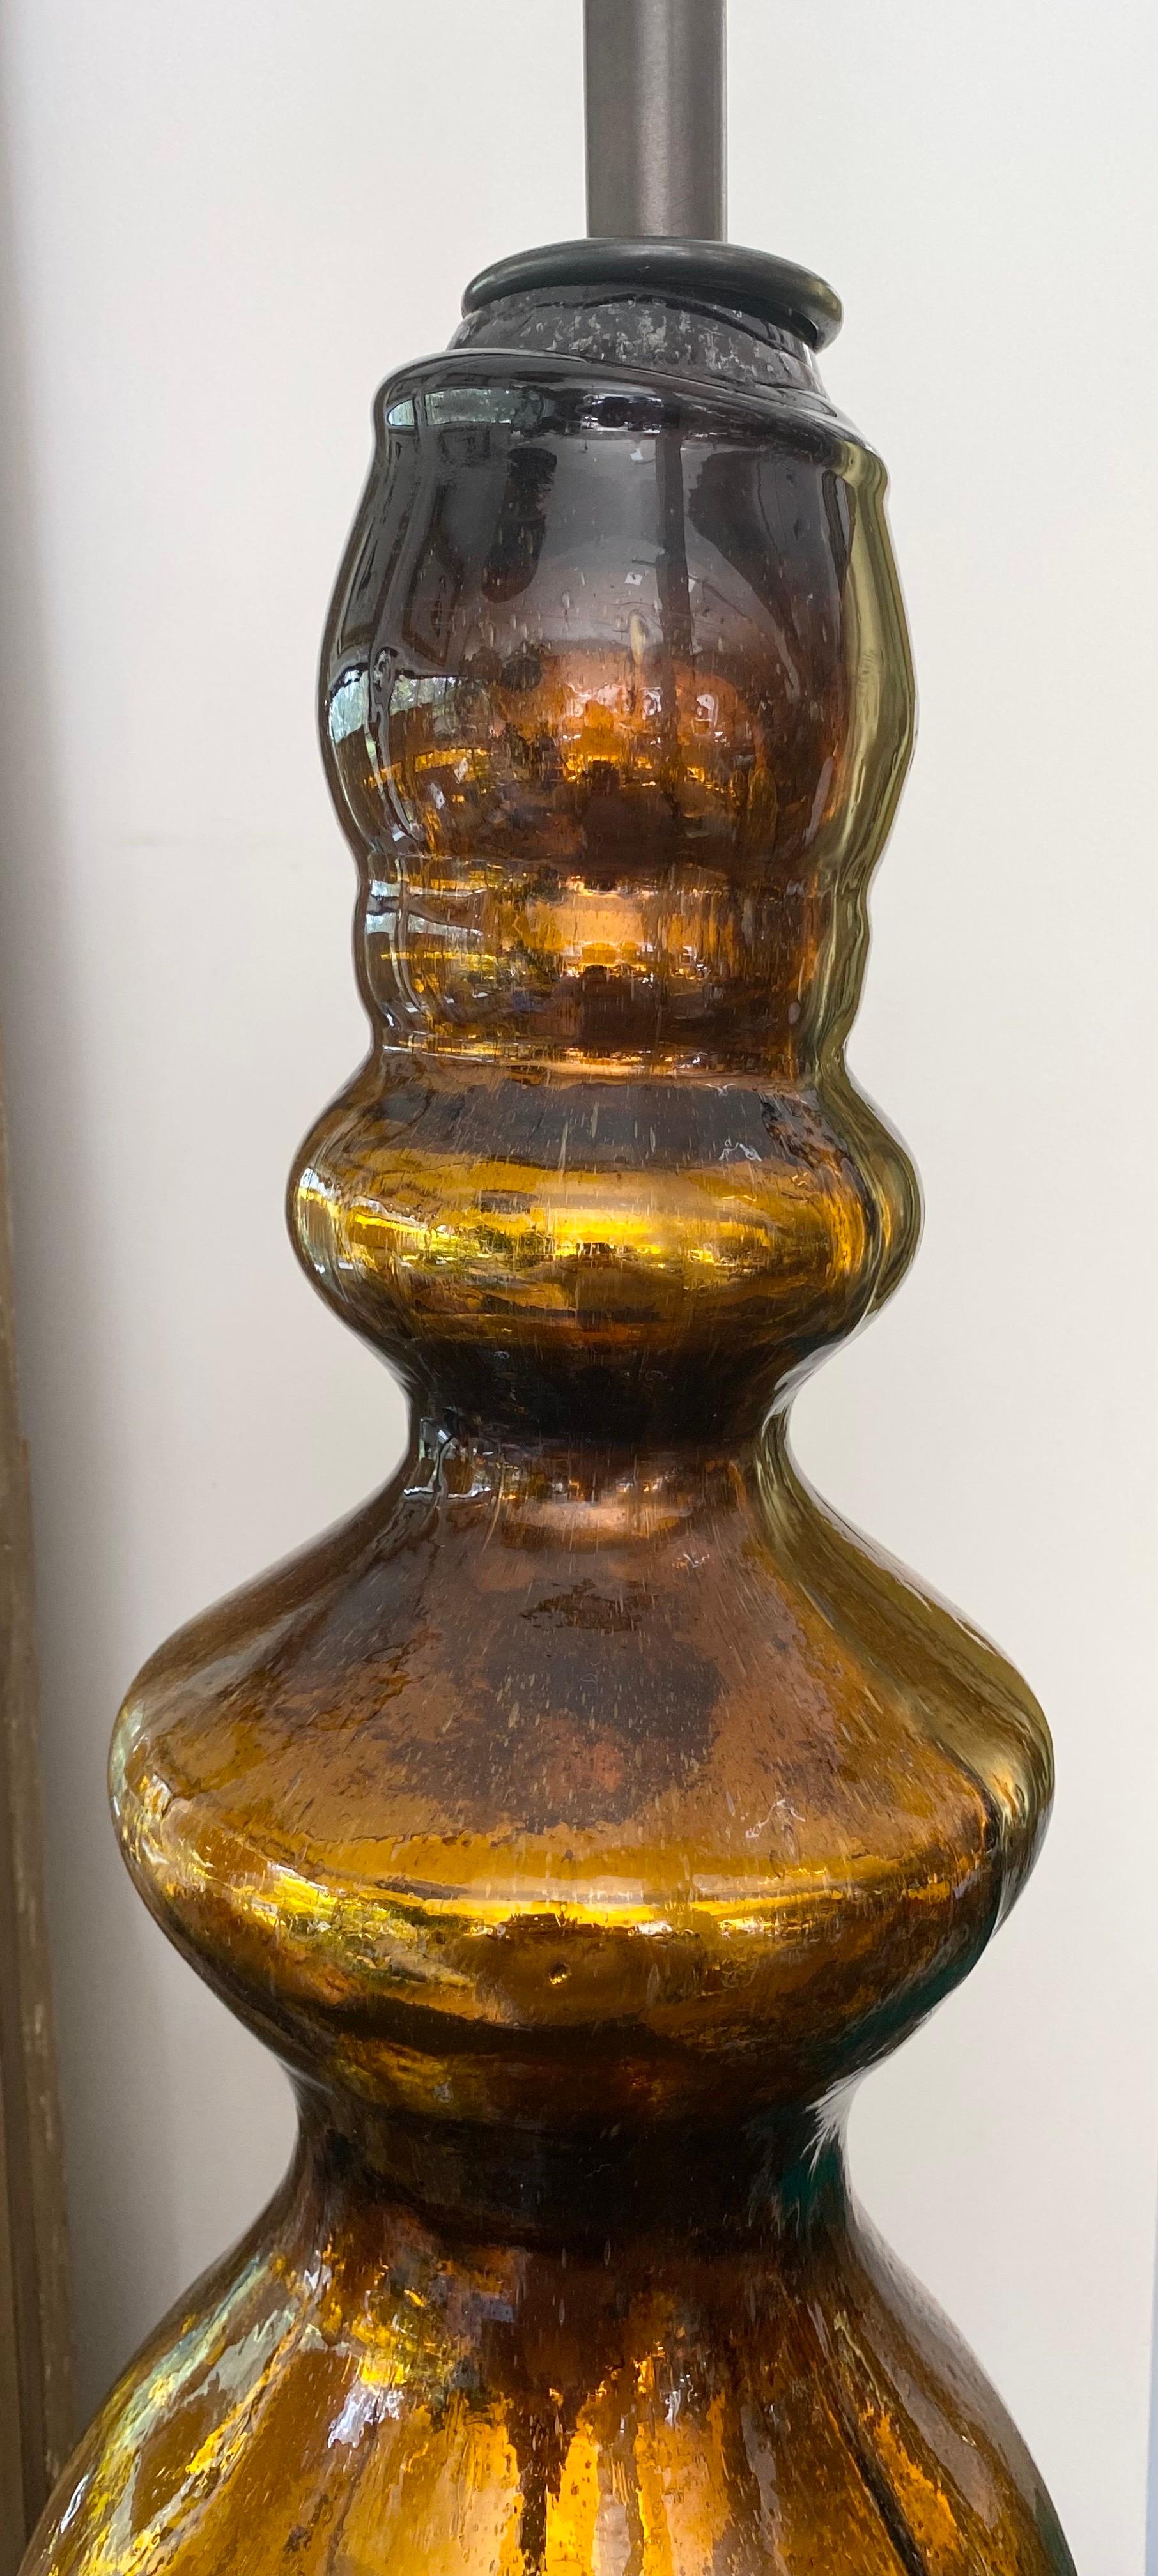 Lampe unique en verre de mercure ambré. Verre épais soufflé à la main avec câblage en cordon de soie et quincaillerie en finition bronze.